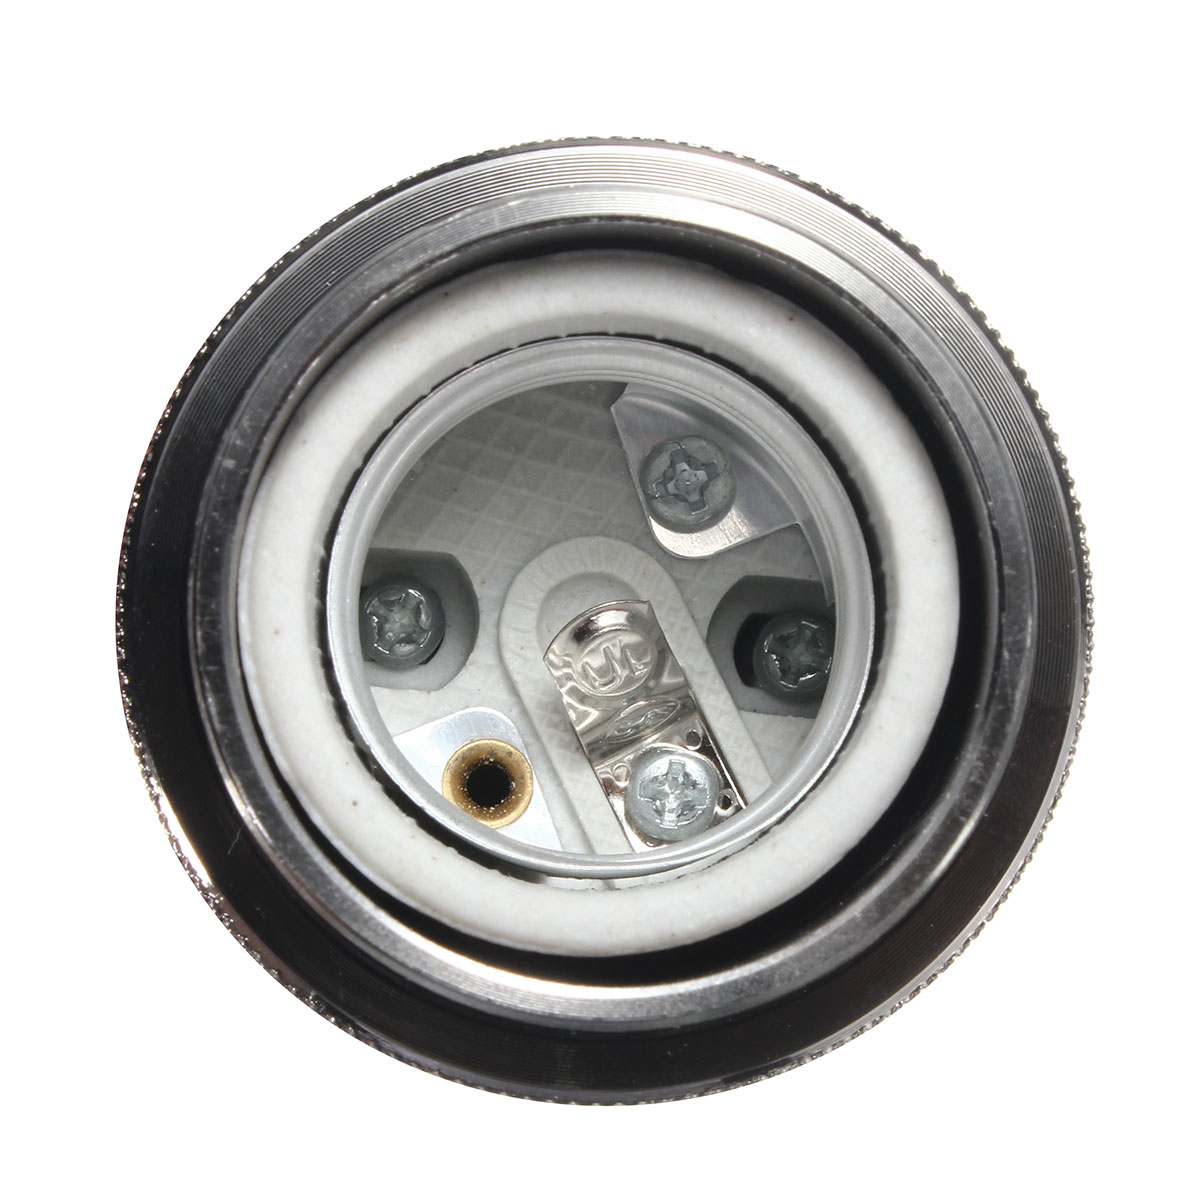 E27-Edison-Bulb-Adapter-Light-Socket-Lampholder-for-DIY-Handmade-Lamp-Pendant-AC110-250V-1431524-9